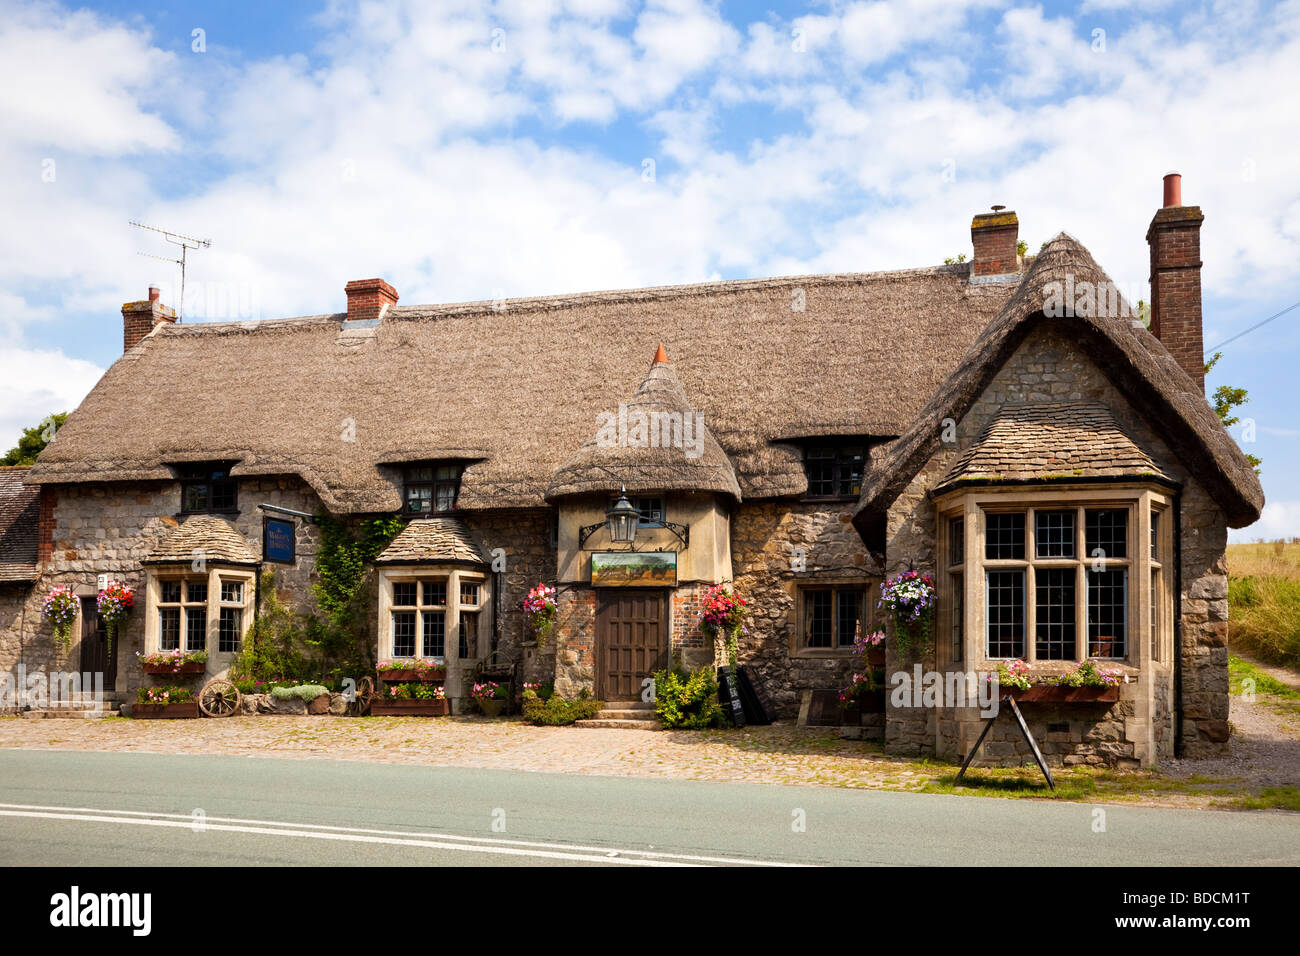 Traditionelle englische thatched Country Pub, Pub - Der Wagen und Pferde, Beckhampton, Marlborough, Wiltshire, England, Großbritannien Stockfoto